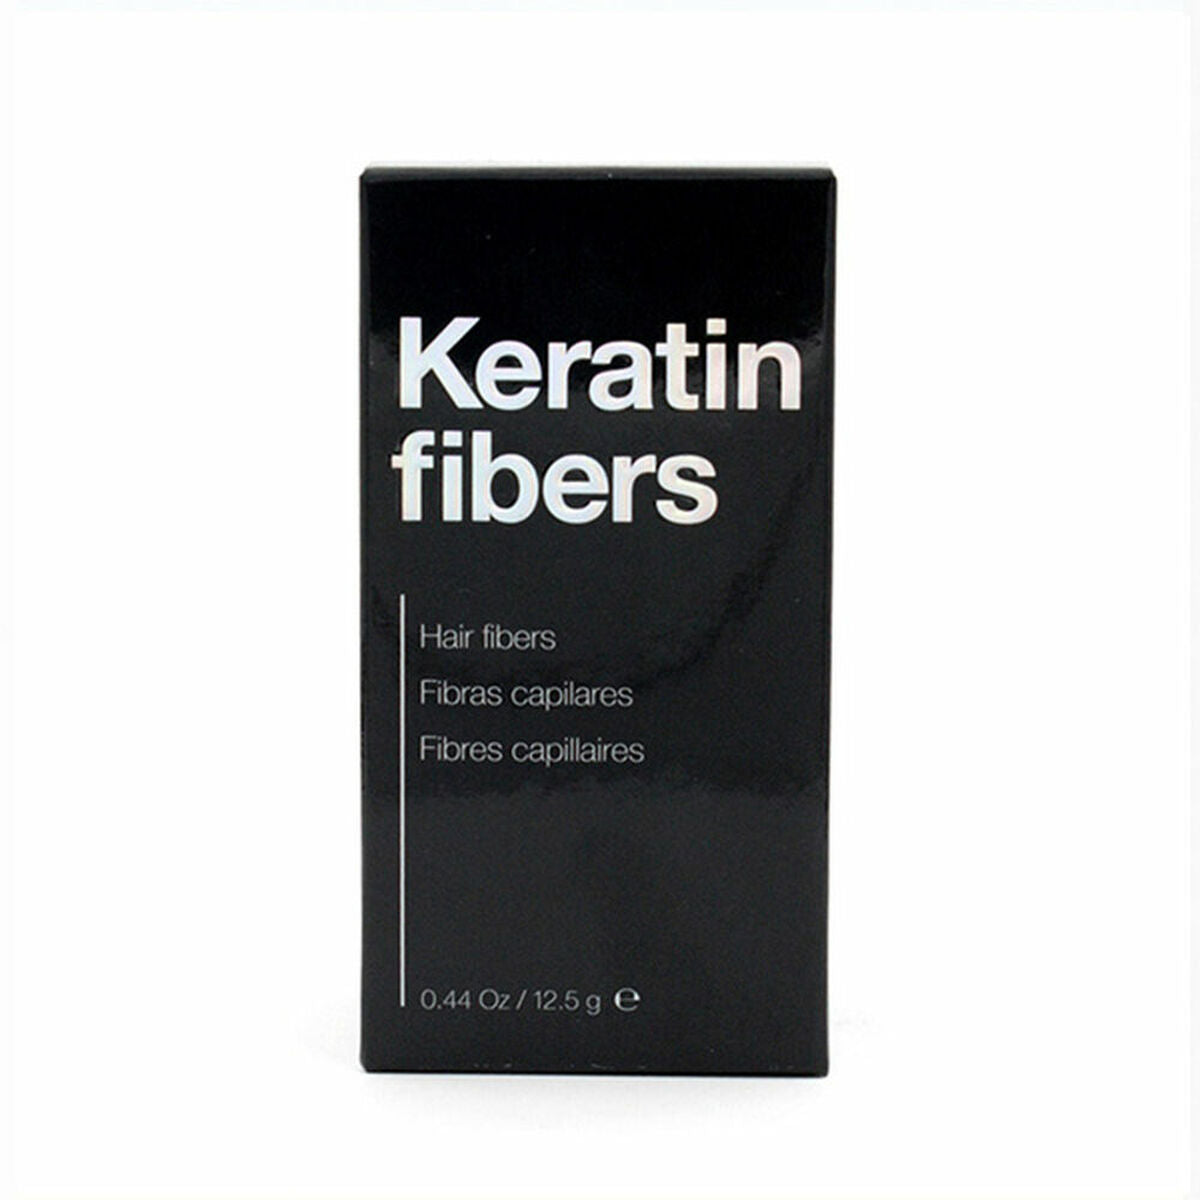 Capillary Fibres Keratin Fibers The Cosmetic Republic TCR13 Black 125 g Keratine | The Cosmetic Republic | Aylal Beauty